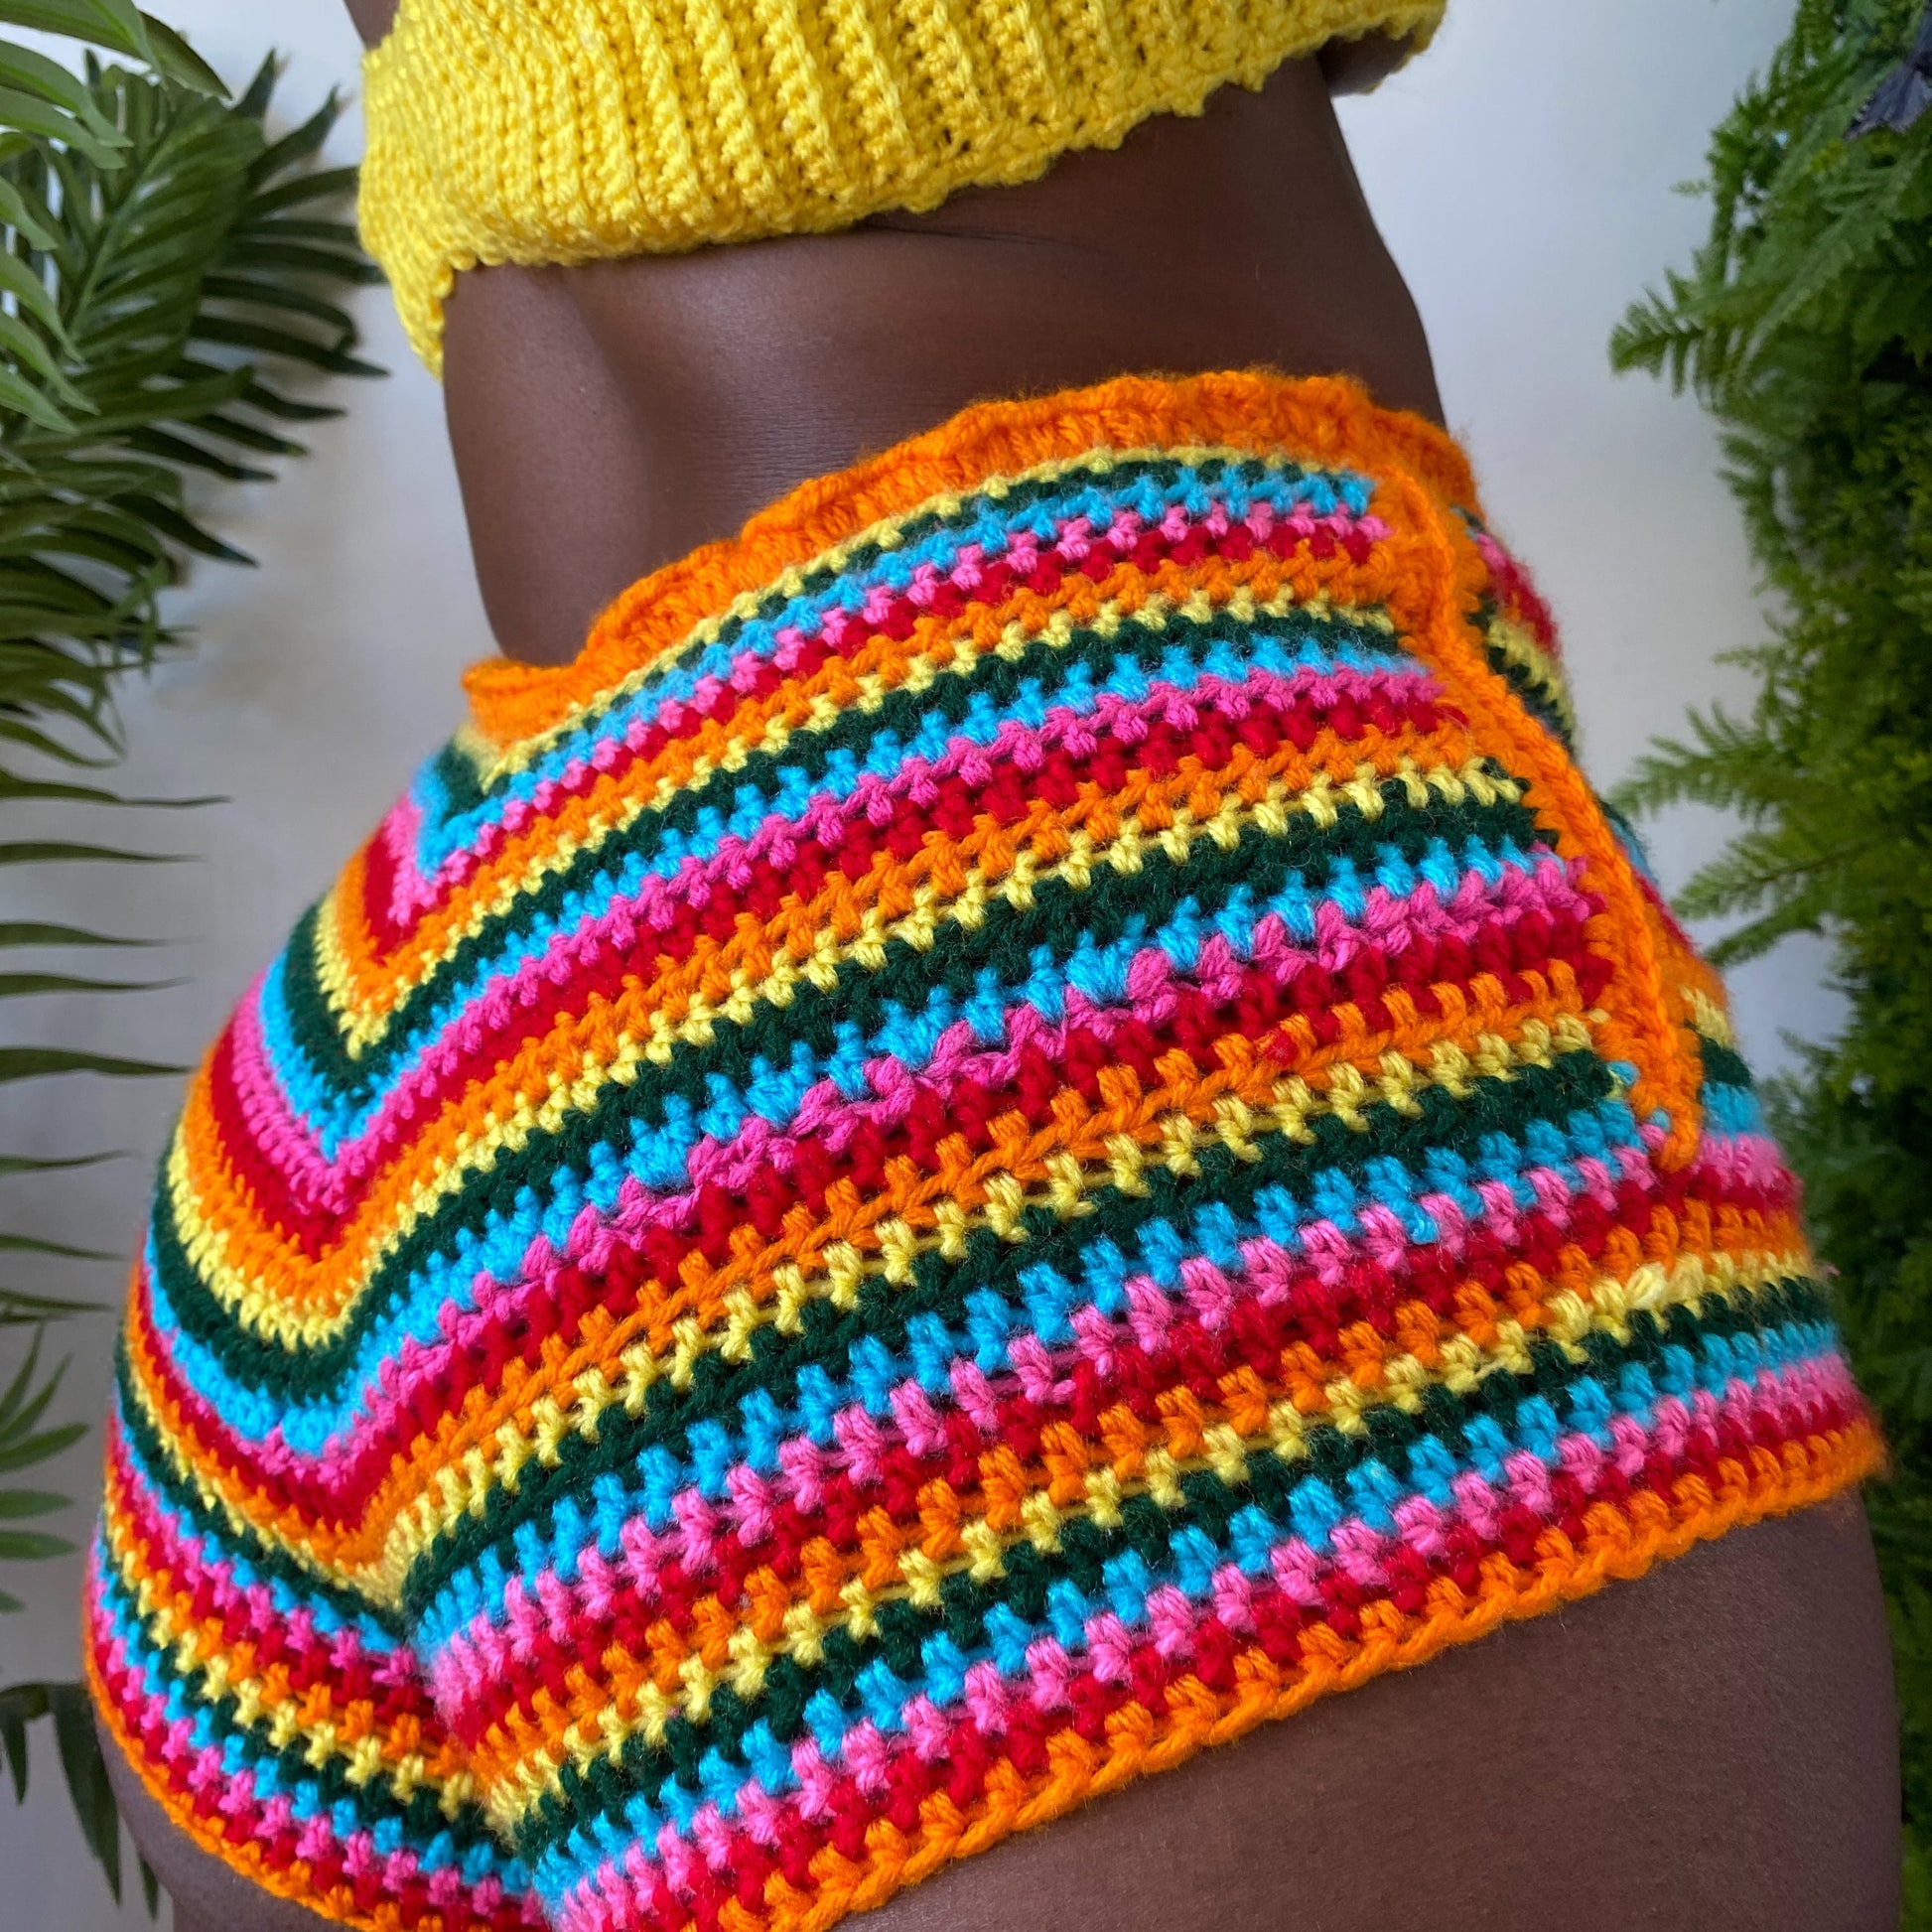 Rainbow Crochet Shorts  TaniJay Crochet – TANIJAY CROCHET